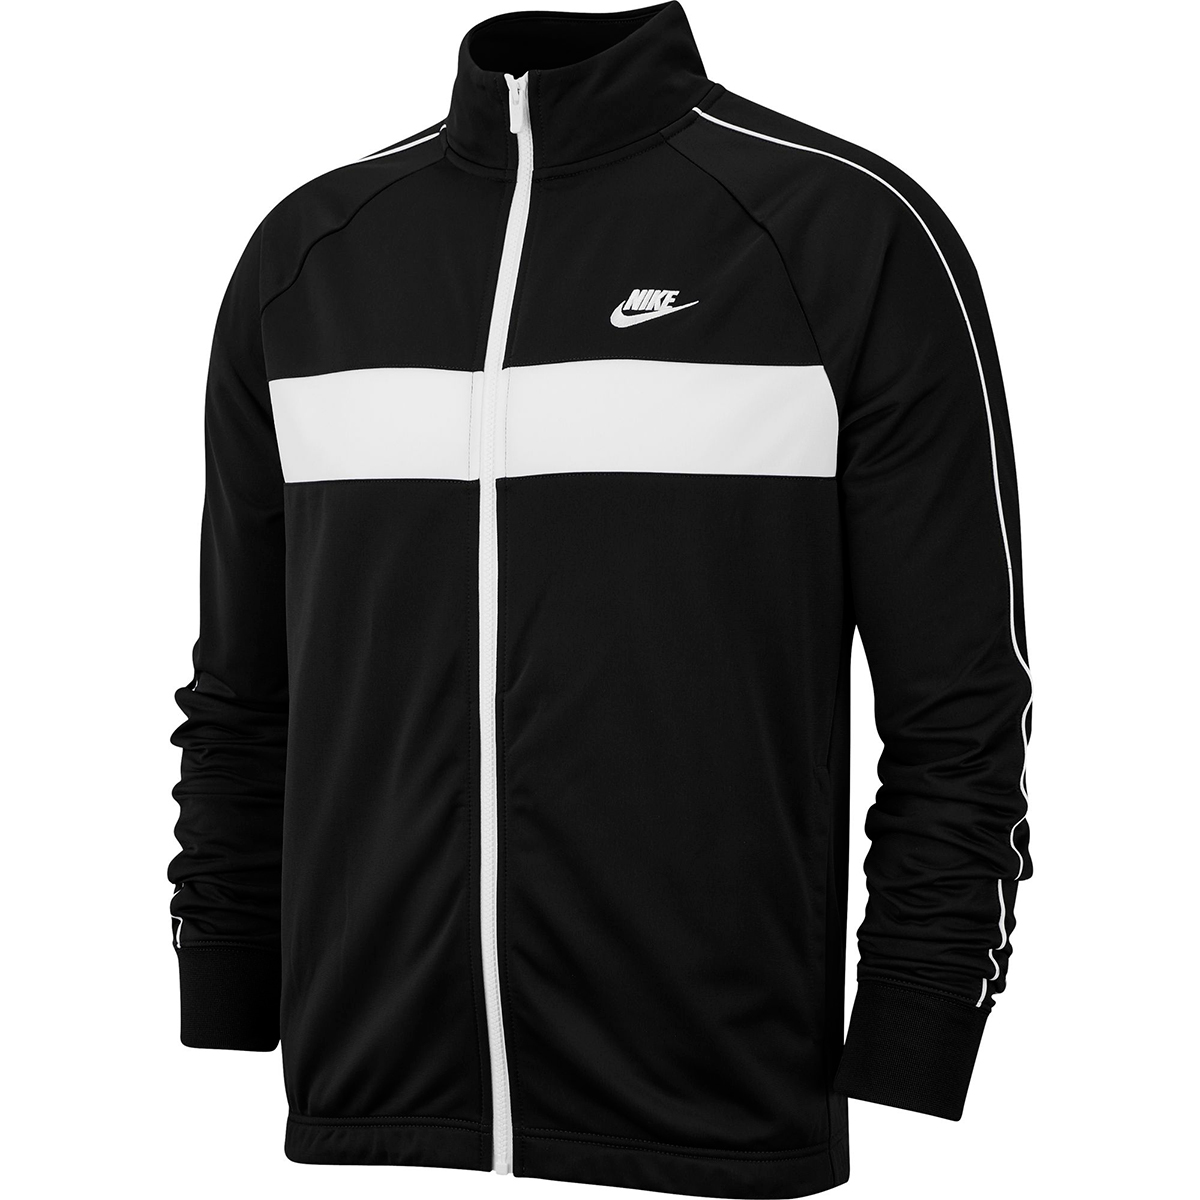 Nike Men's Sportswear Jacket - Black, M